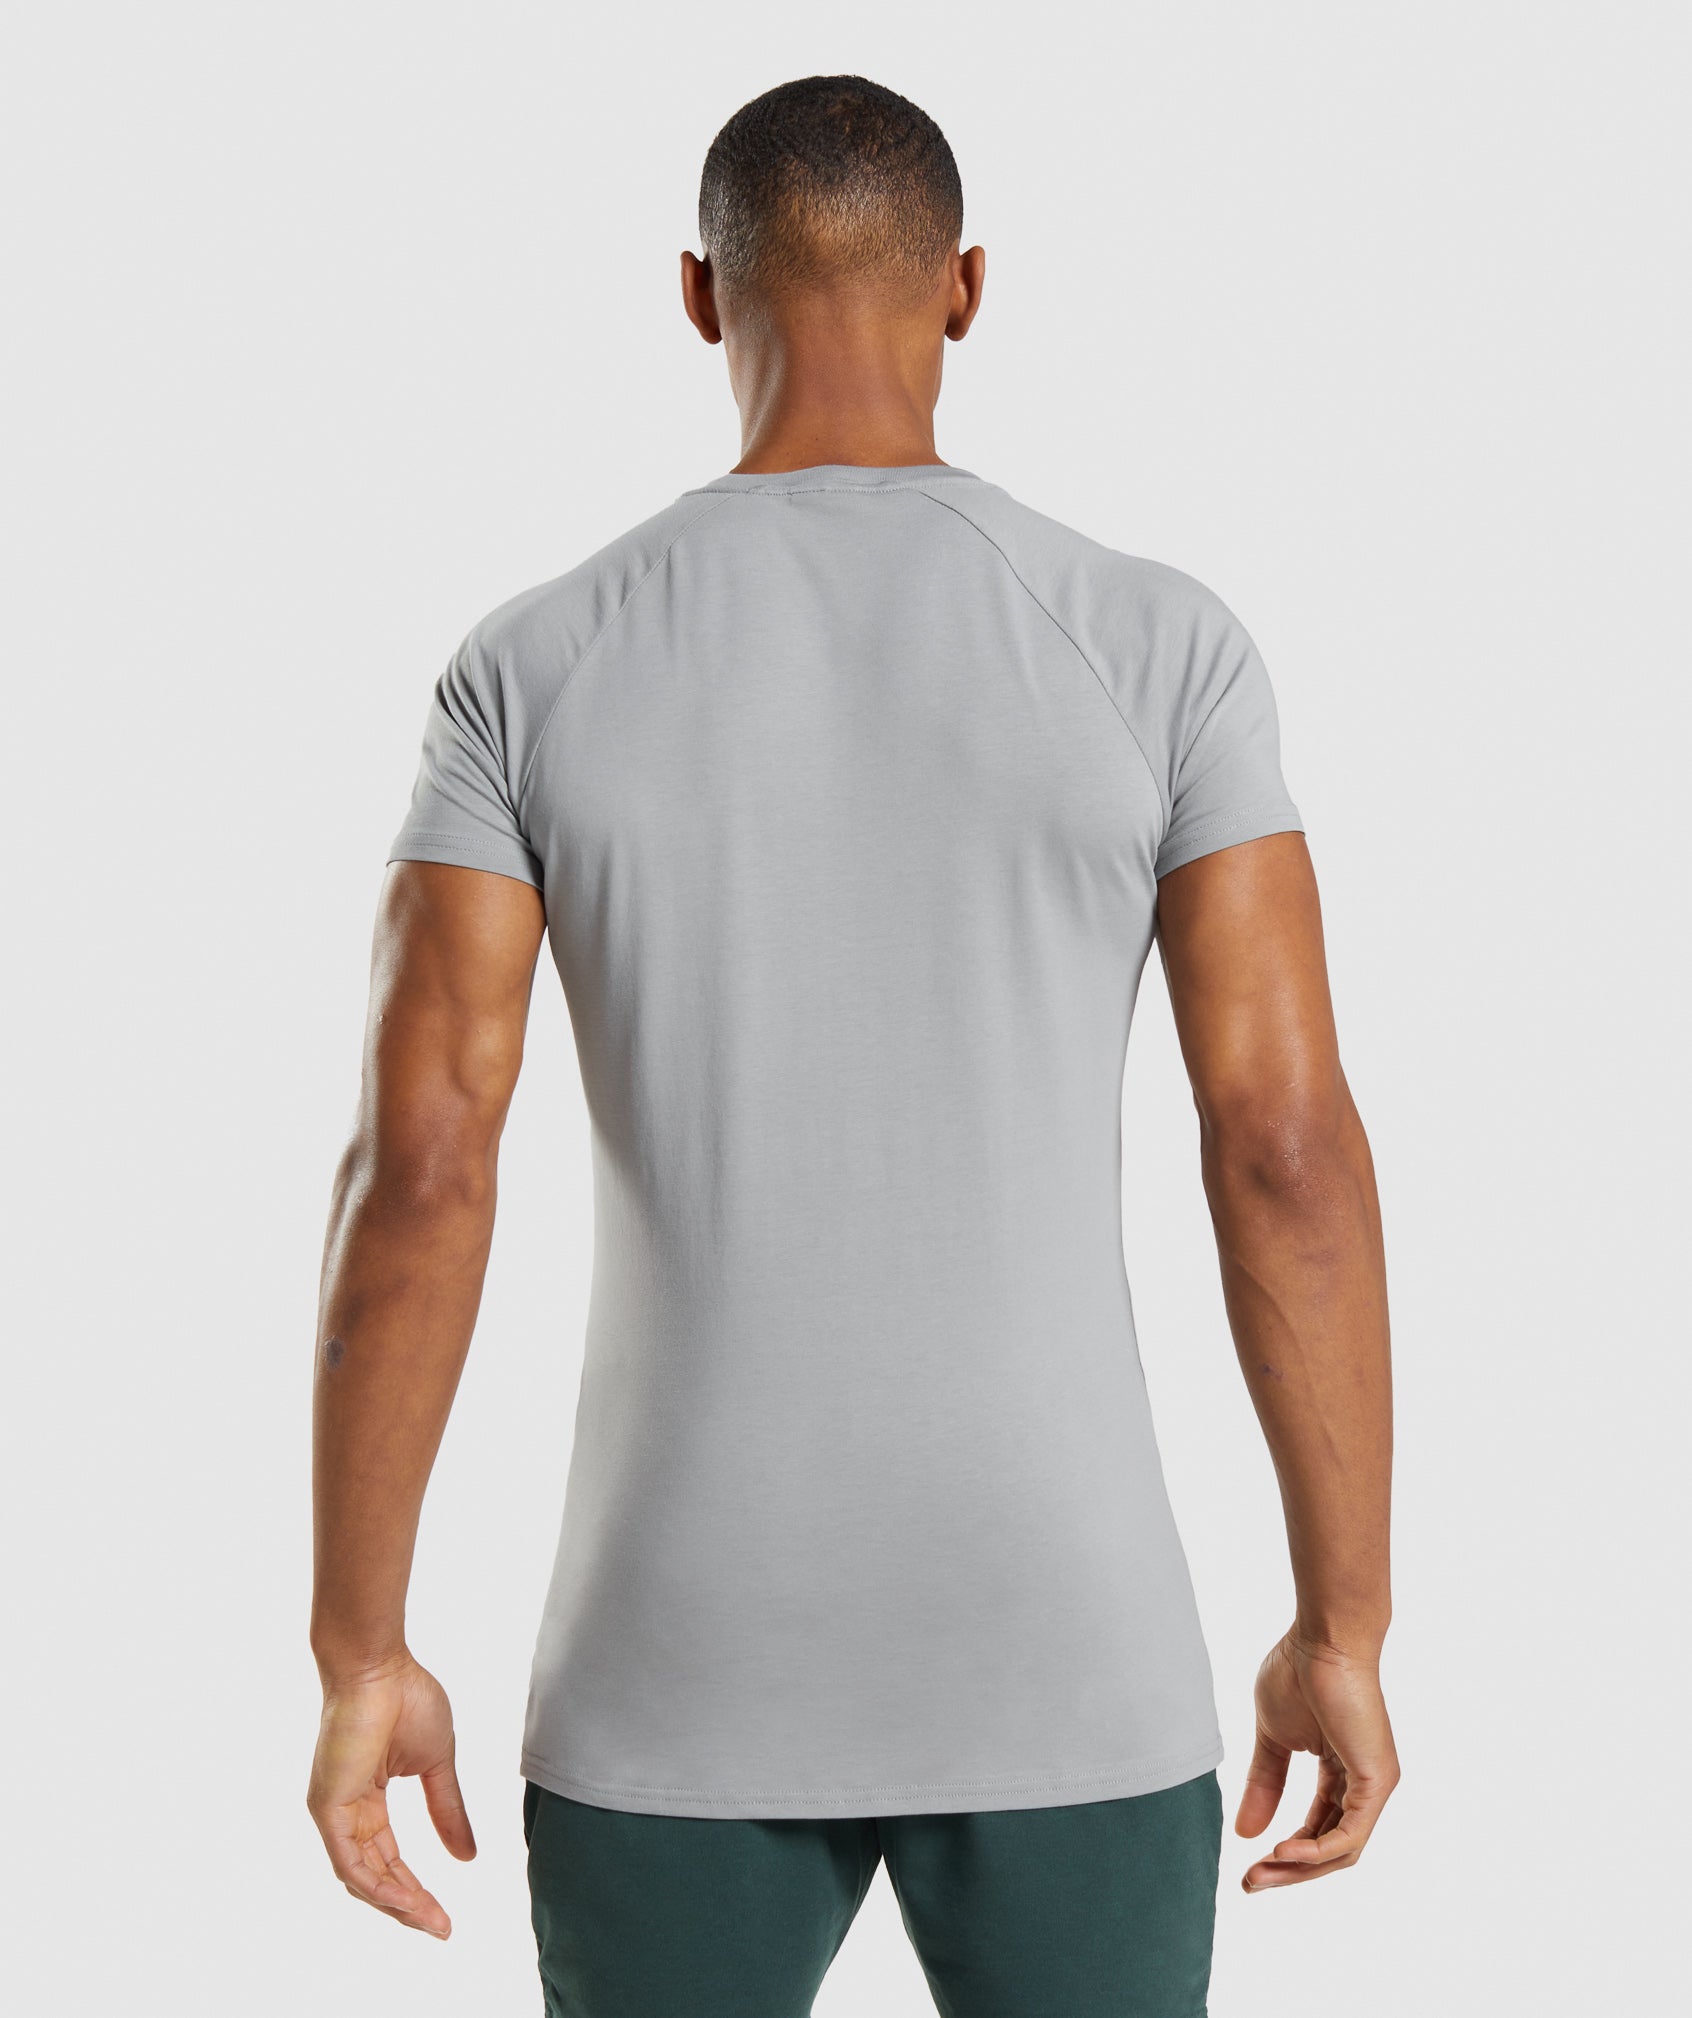 Apollo T-Shirt in Smokey Grey - view 3